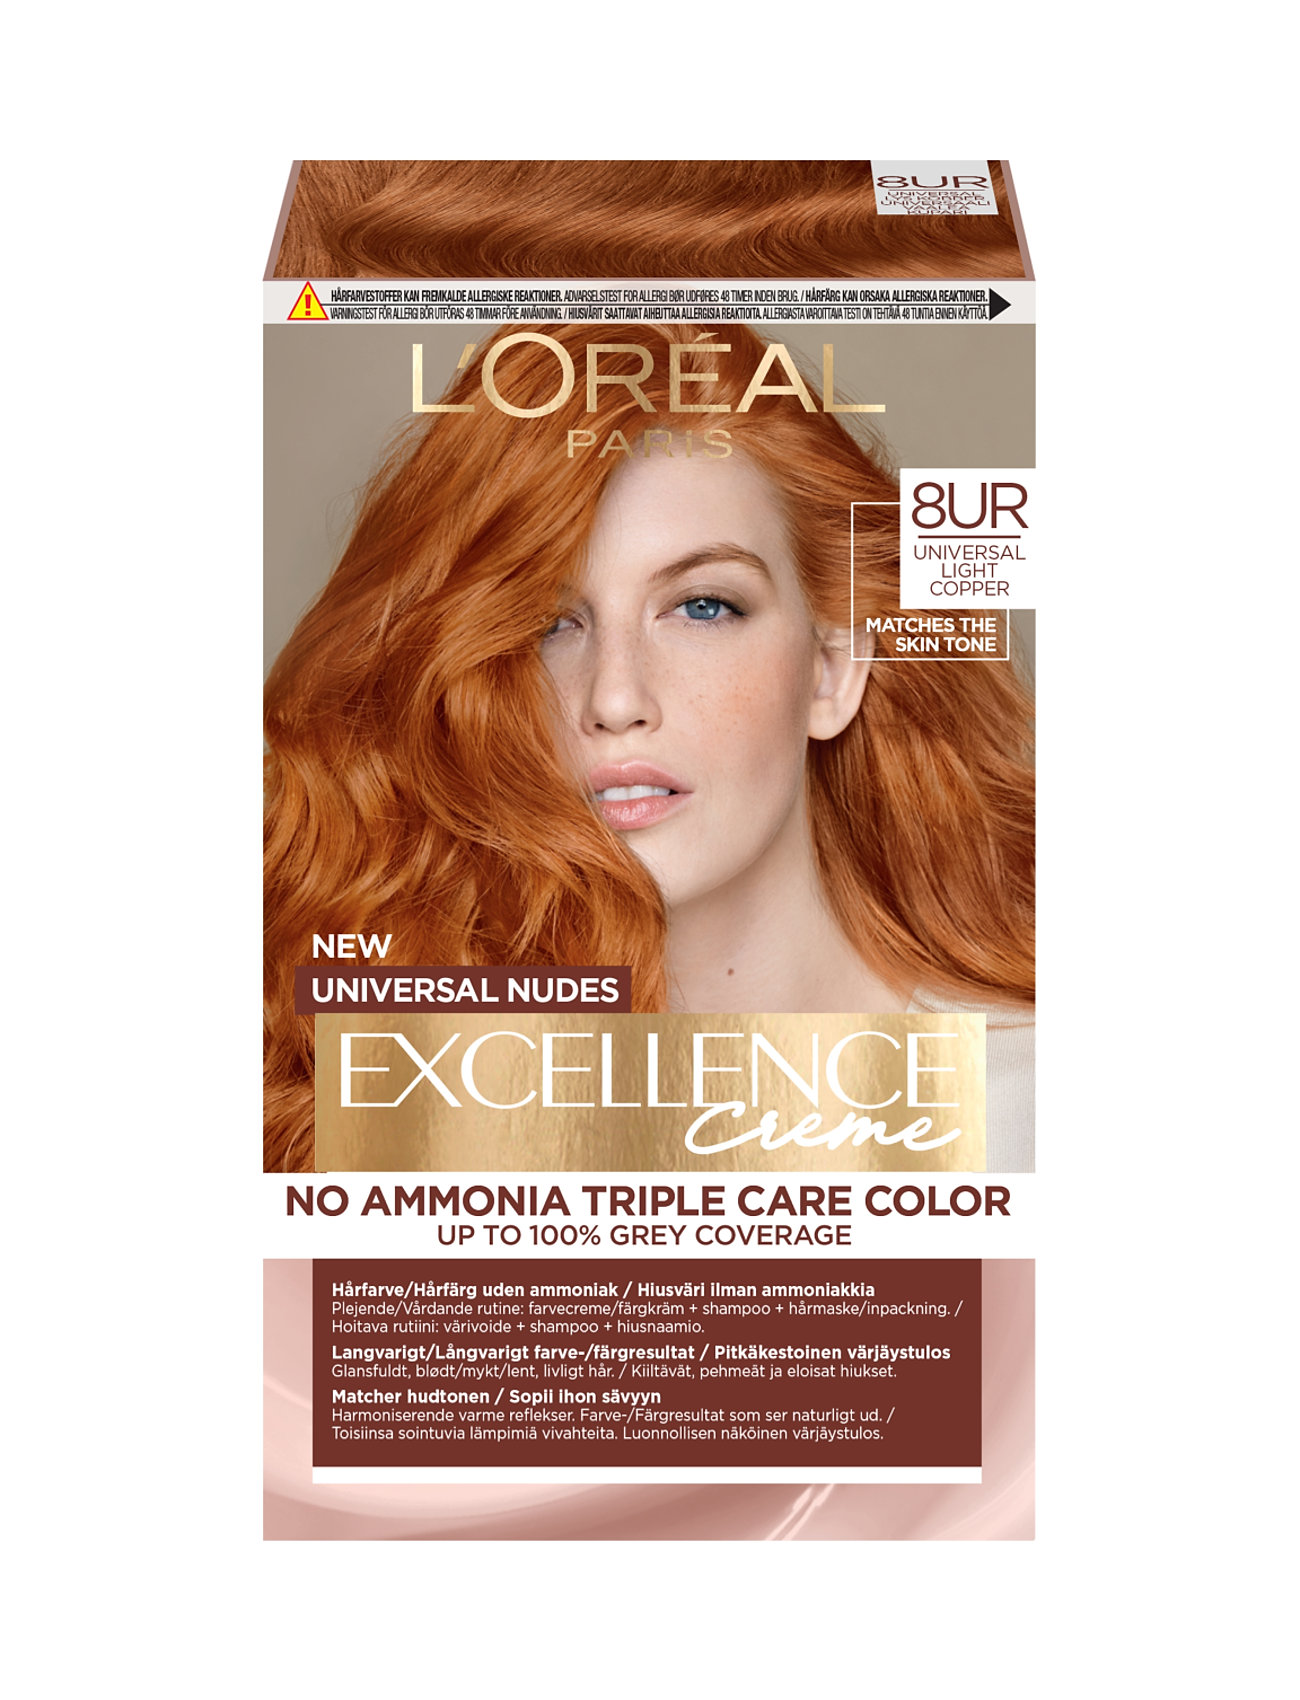 "L'Oréal Paris" "L'oréal Paris, Excellence, Universal Nudes, Hair Color That Matches All Skin T S Beauty Women Care Treatments Nude L'Oréal